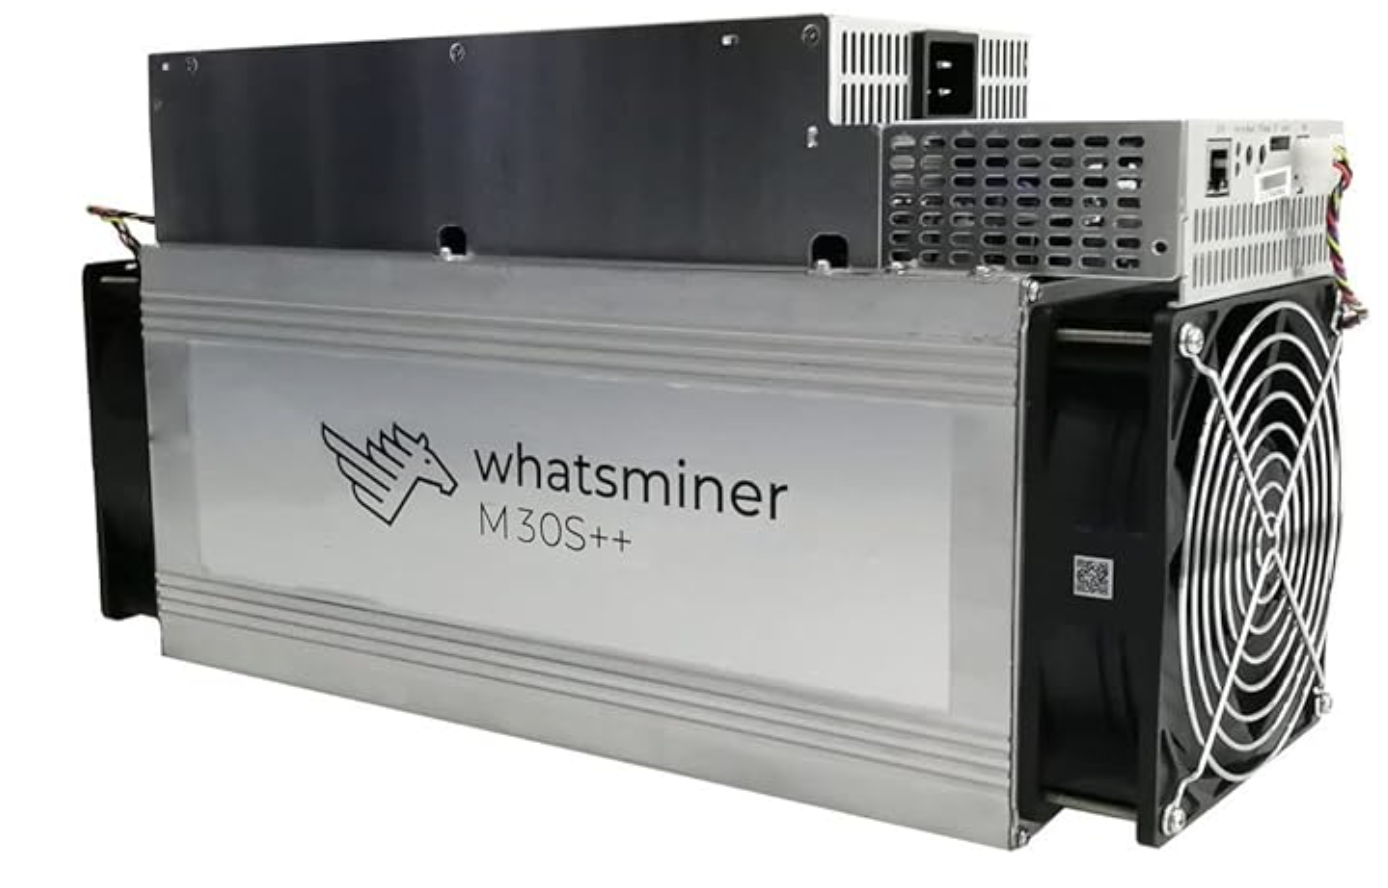 Whatsminer M30S++